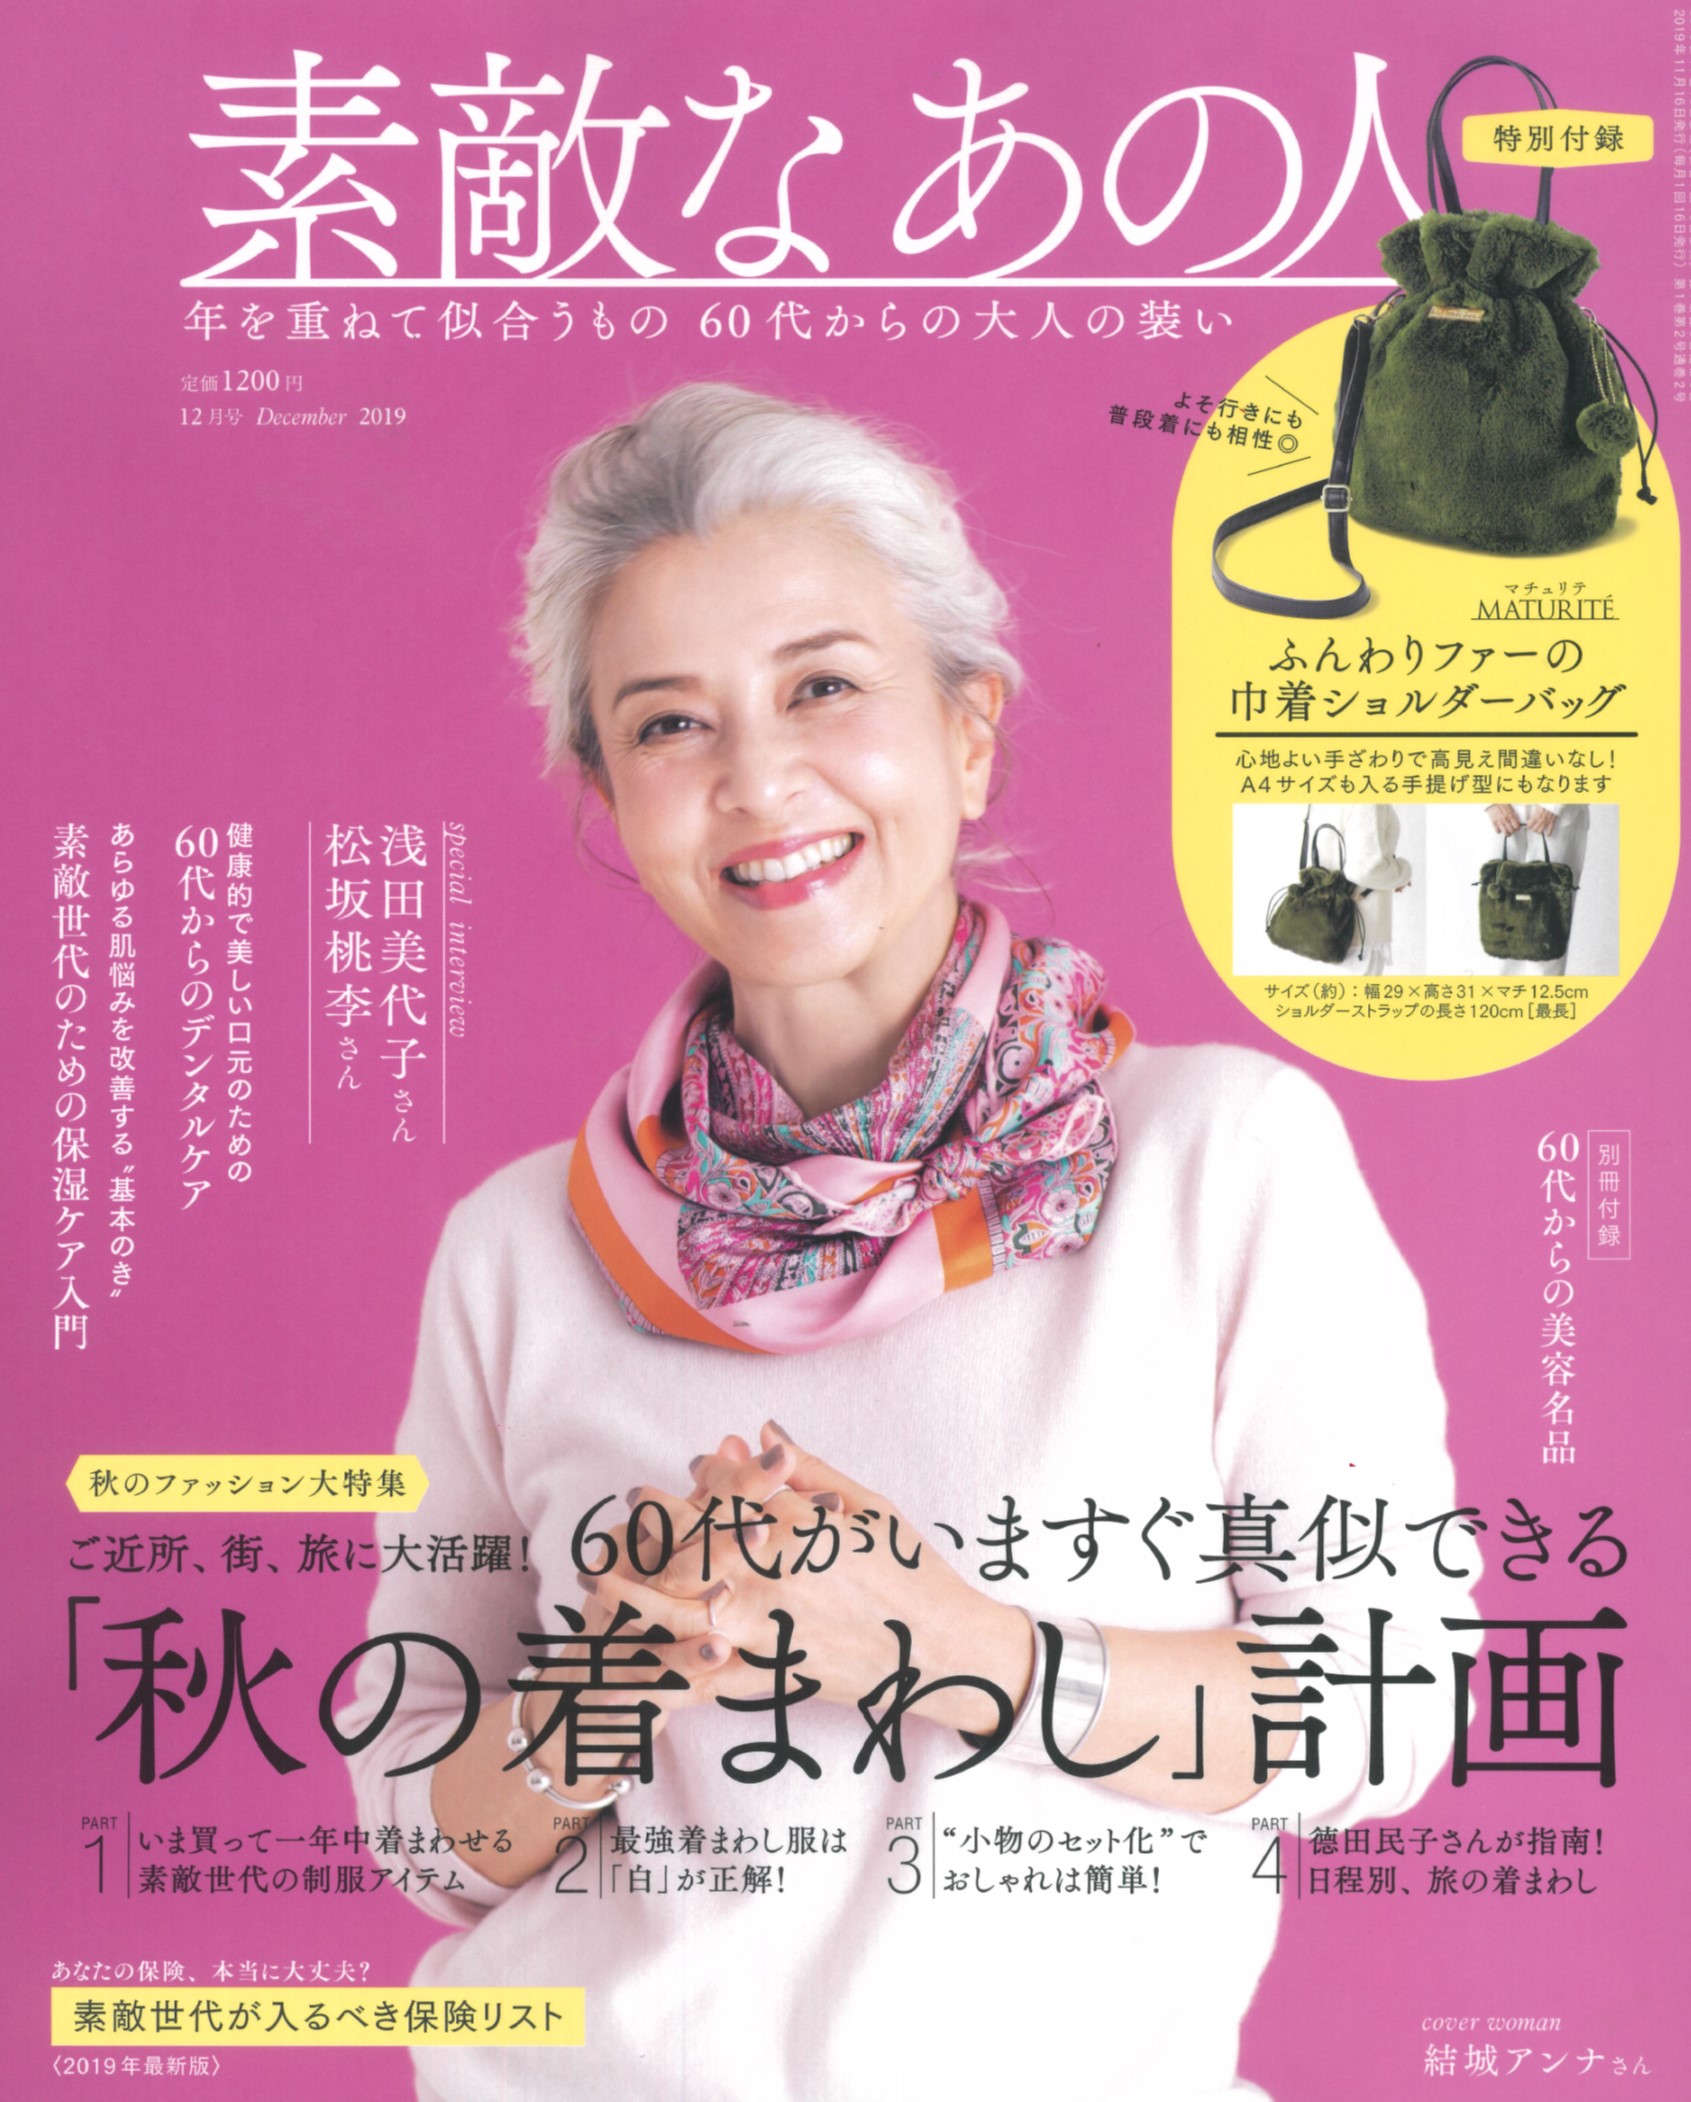 創刊号が完売 日本初の60代ファッション誌 新しい60代 素敵世代が熱い 株式会社 宝島社のプレスリリース